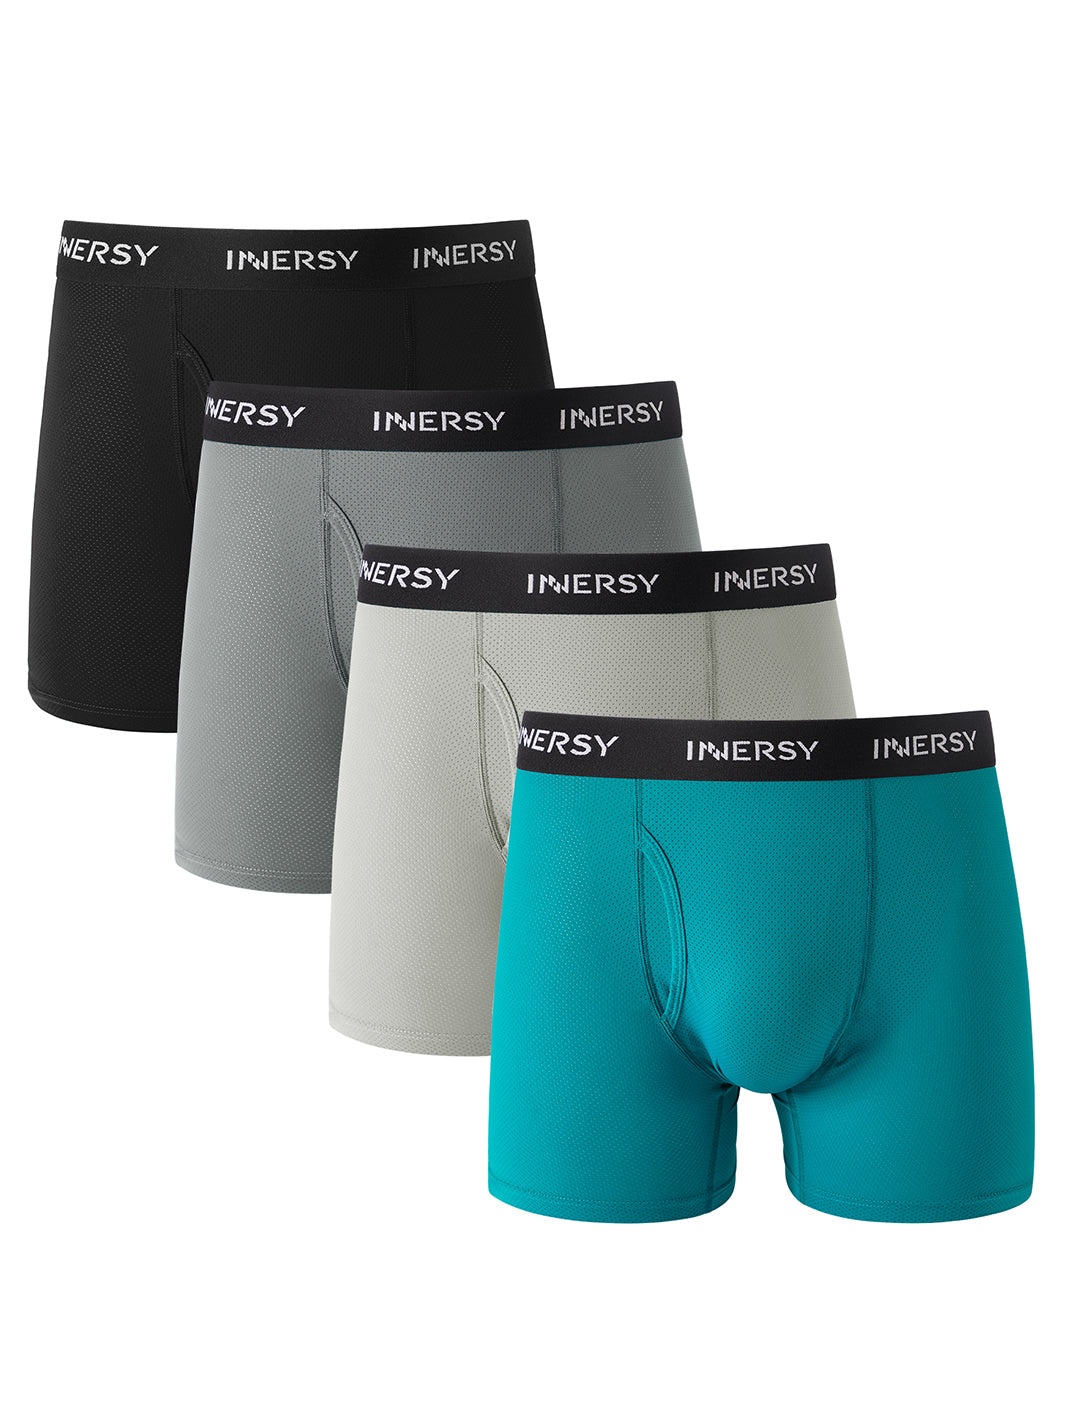 Buy COOLZY Men's Cotton Innerwear Underwear Brief (Pack of 3) (XXL